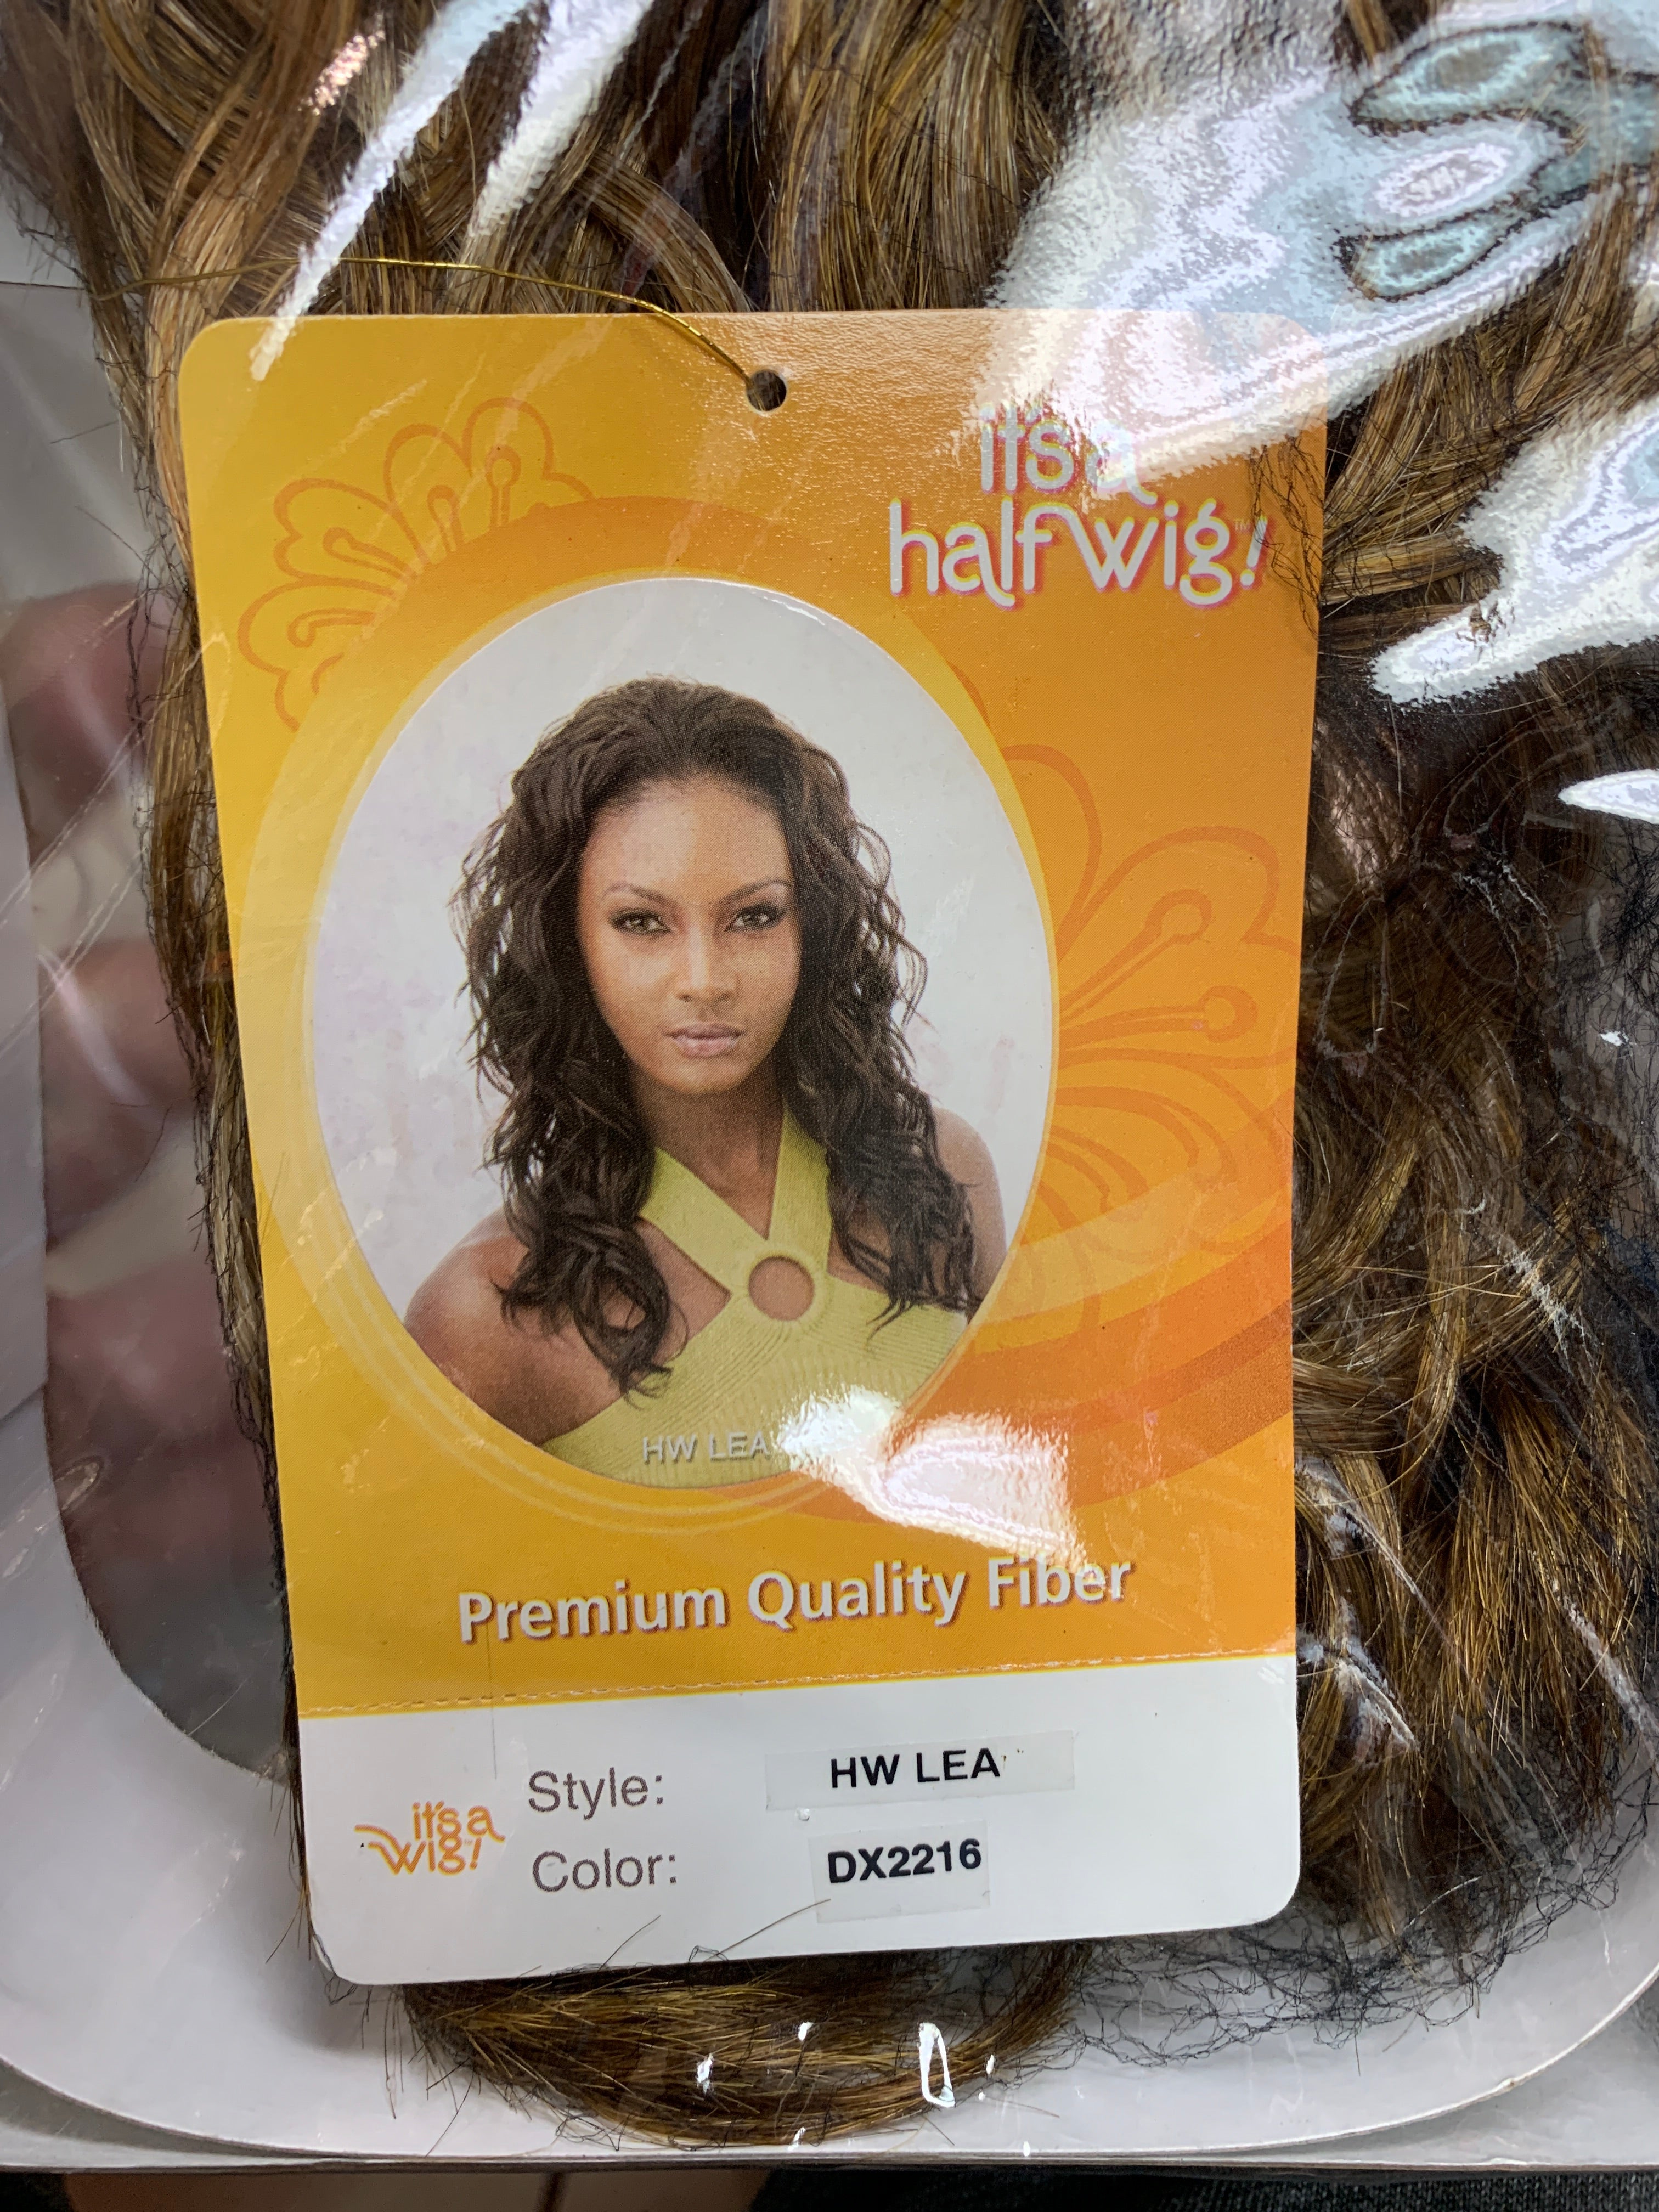 It’s a wig hw lea